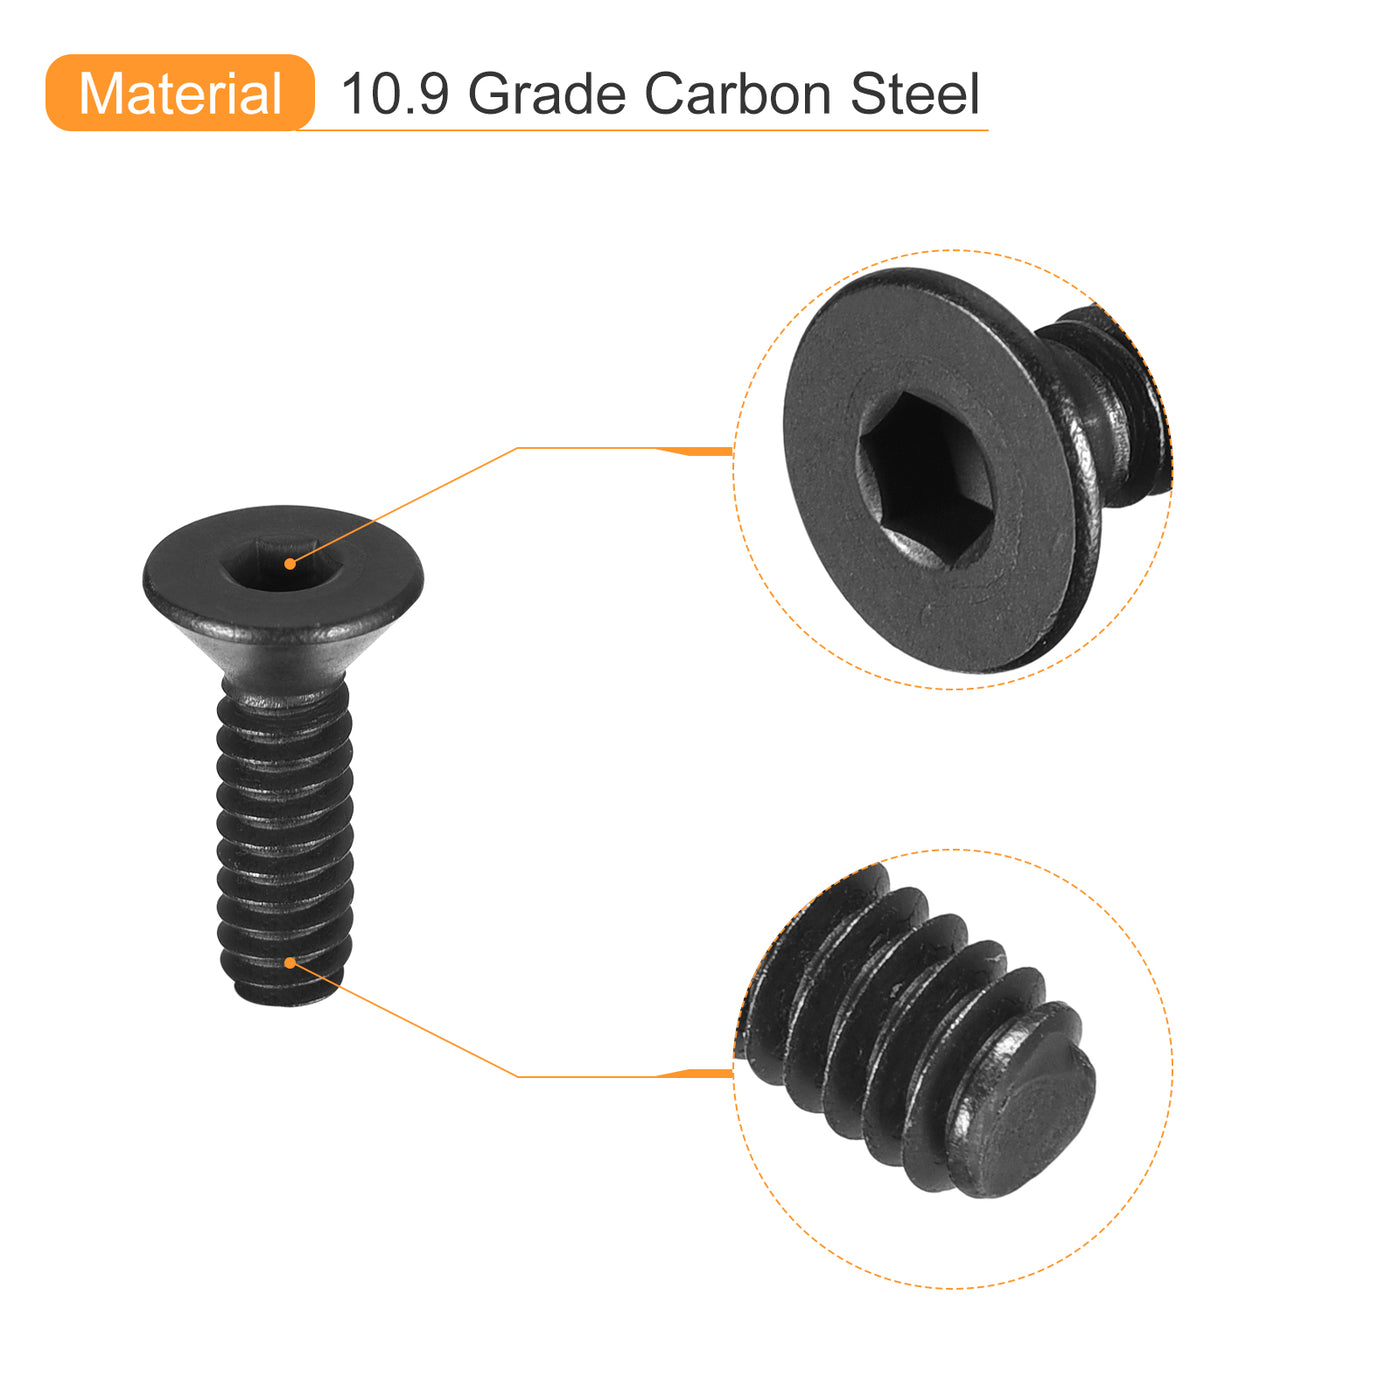 uxcell Uxcell #4-40x3/8" Flat Head Socket Cap Screws, 10.9 Grade Carbon, Black, 20pcs